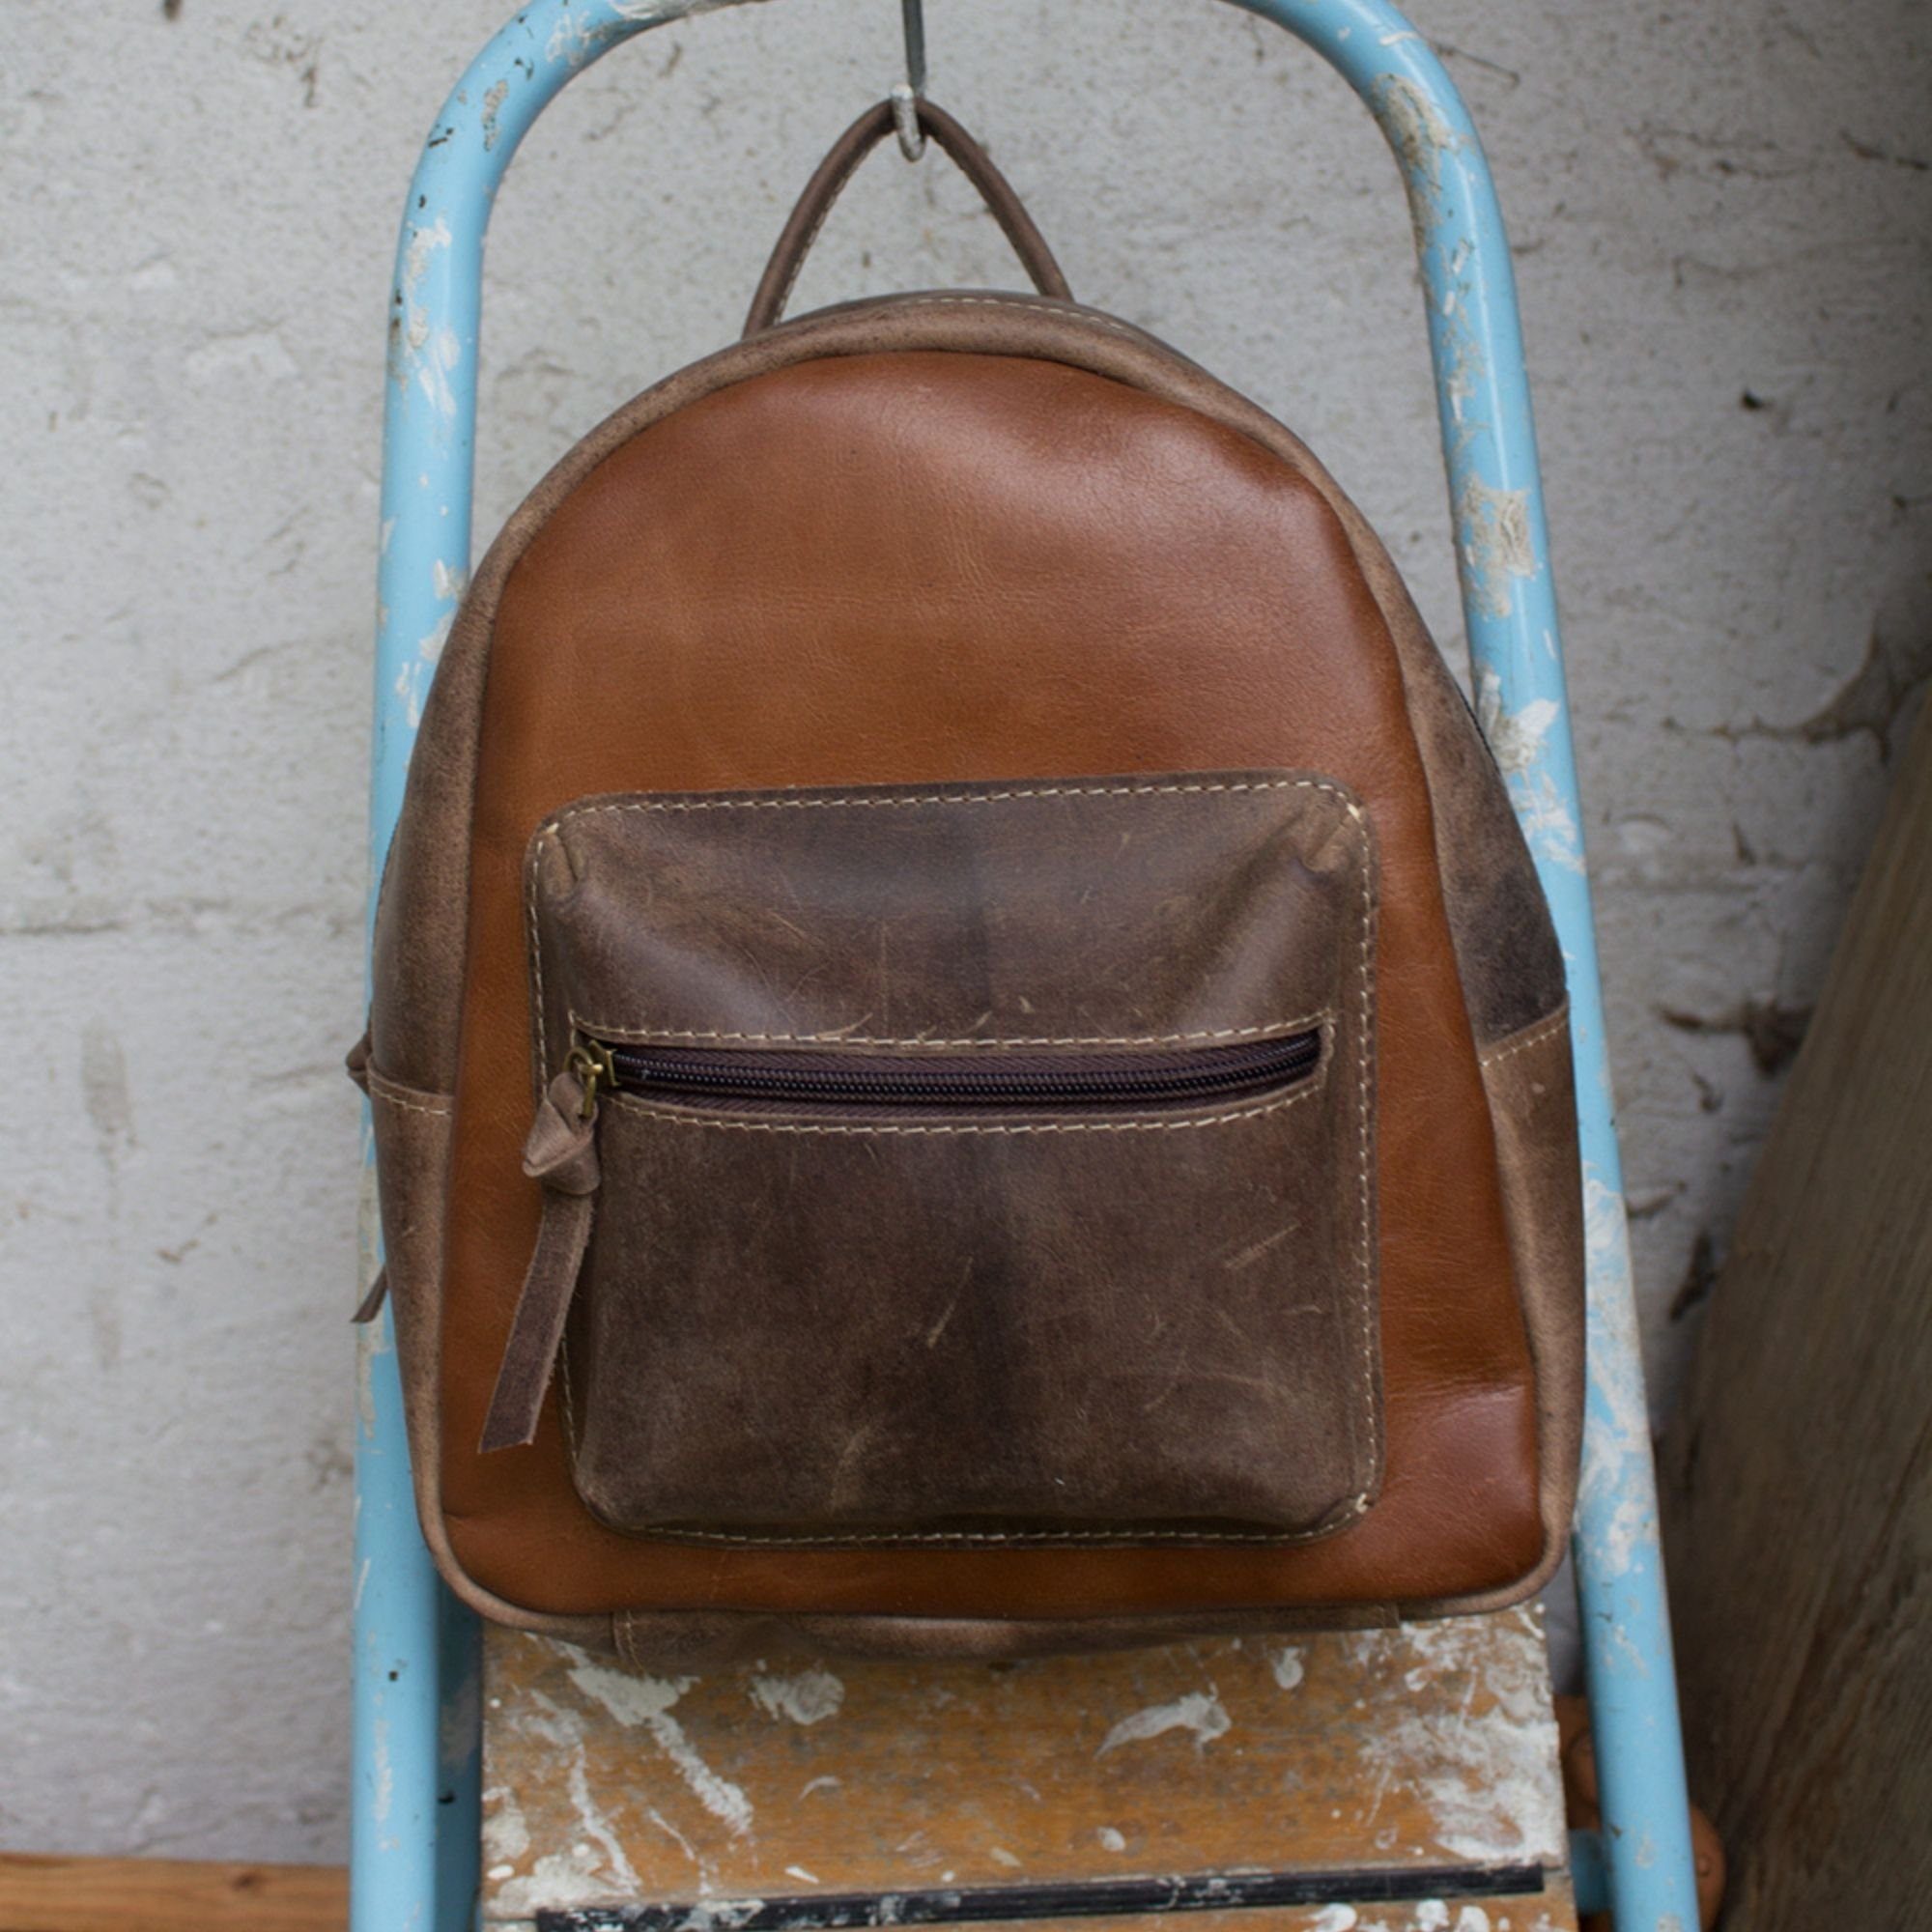 Sunsa Cityrucksack Stone Rucksack, Backpack braun/D.braun Still. Sie/ Retro in Tasche Daypack für Ihn, Schöne Canvas wash Leder und echte aus Leder